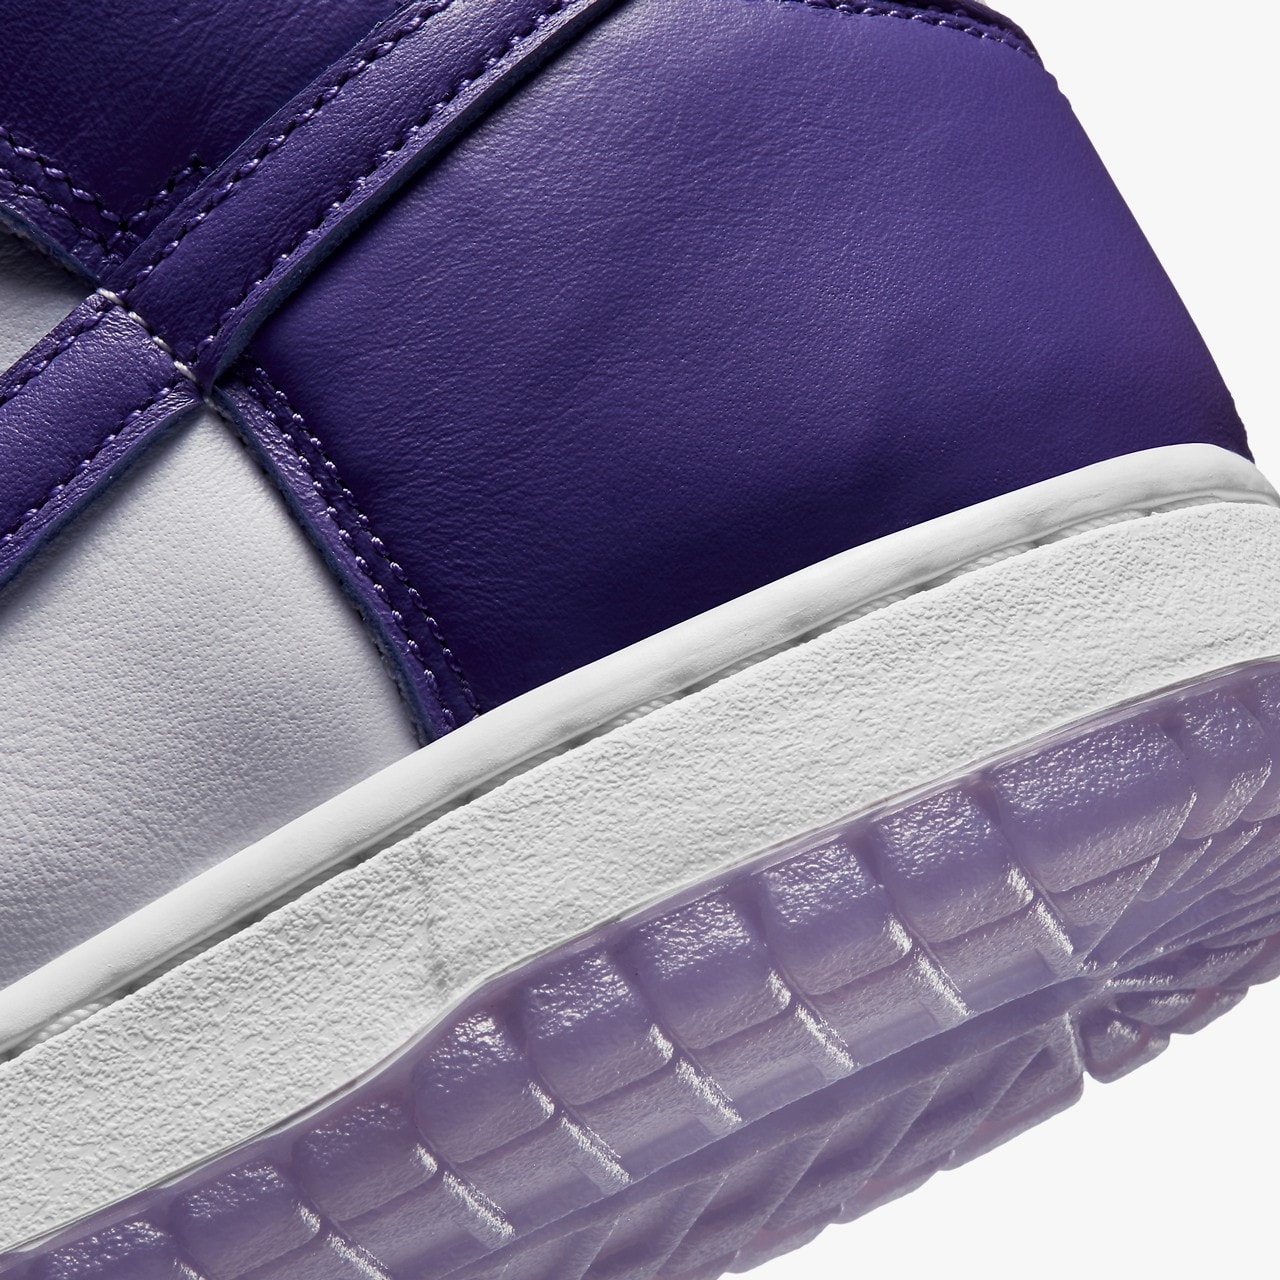 率先近賞 Nike SB Dunk High 全新配色「Varsity Purple」